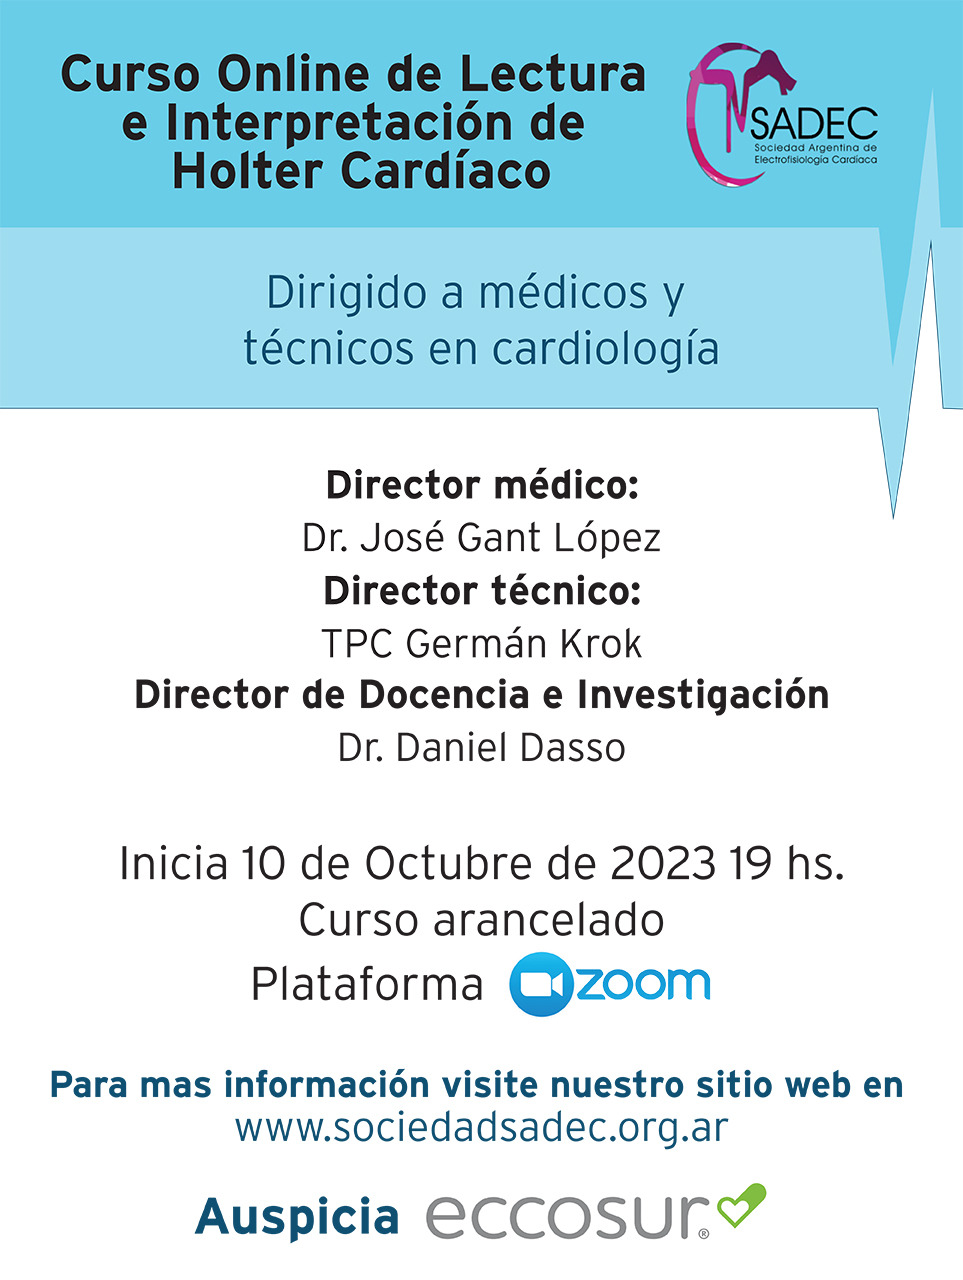 Lectura e Interpretacion de Holter cardiaco 2023